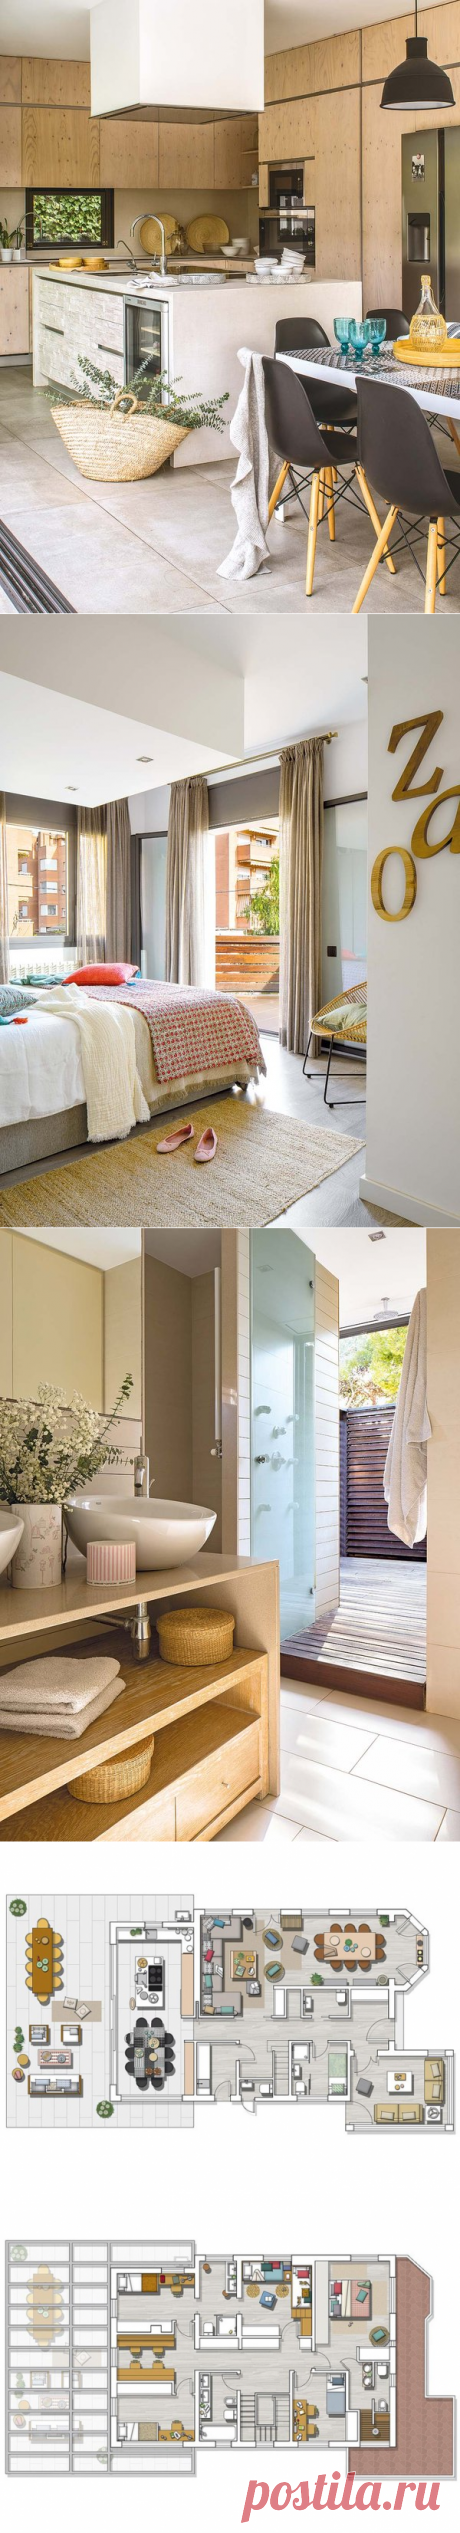 〚 Просторный дом с террасой в Испании 〛 ◾ Фото ◾Идеи◾ Дизайн